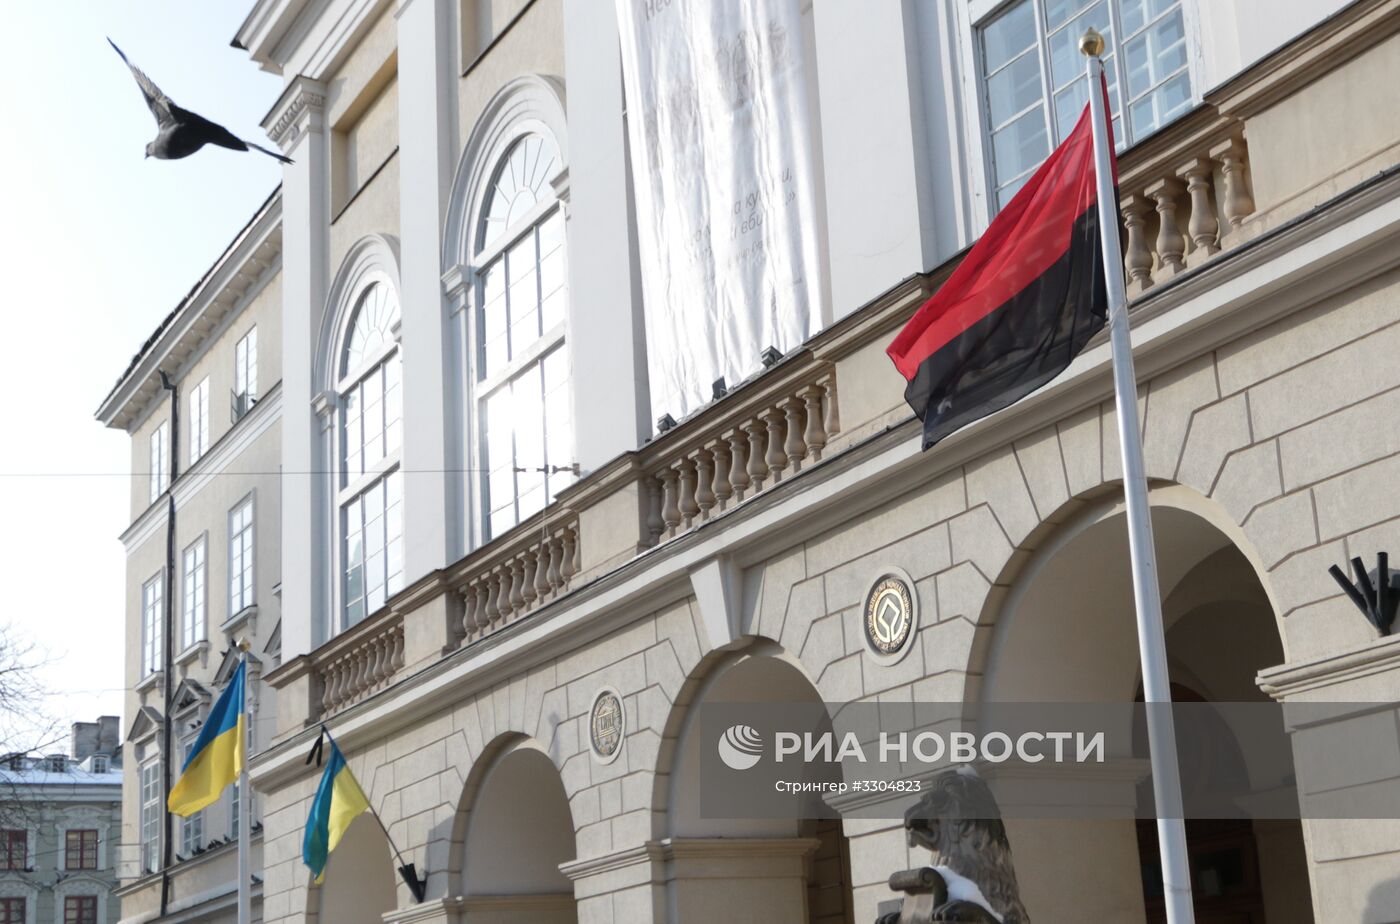 Флаг националистов появился у здания Львовского городского совета